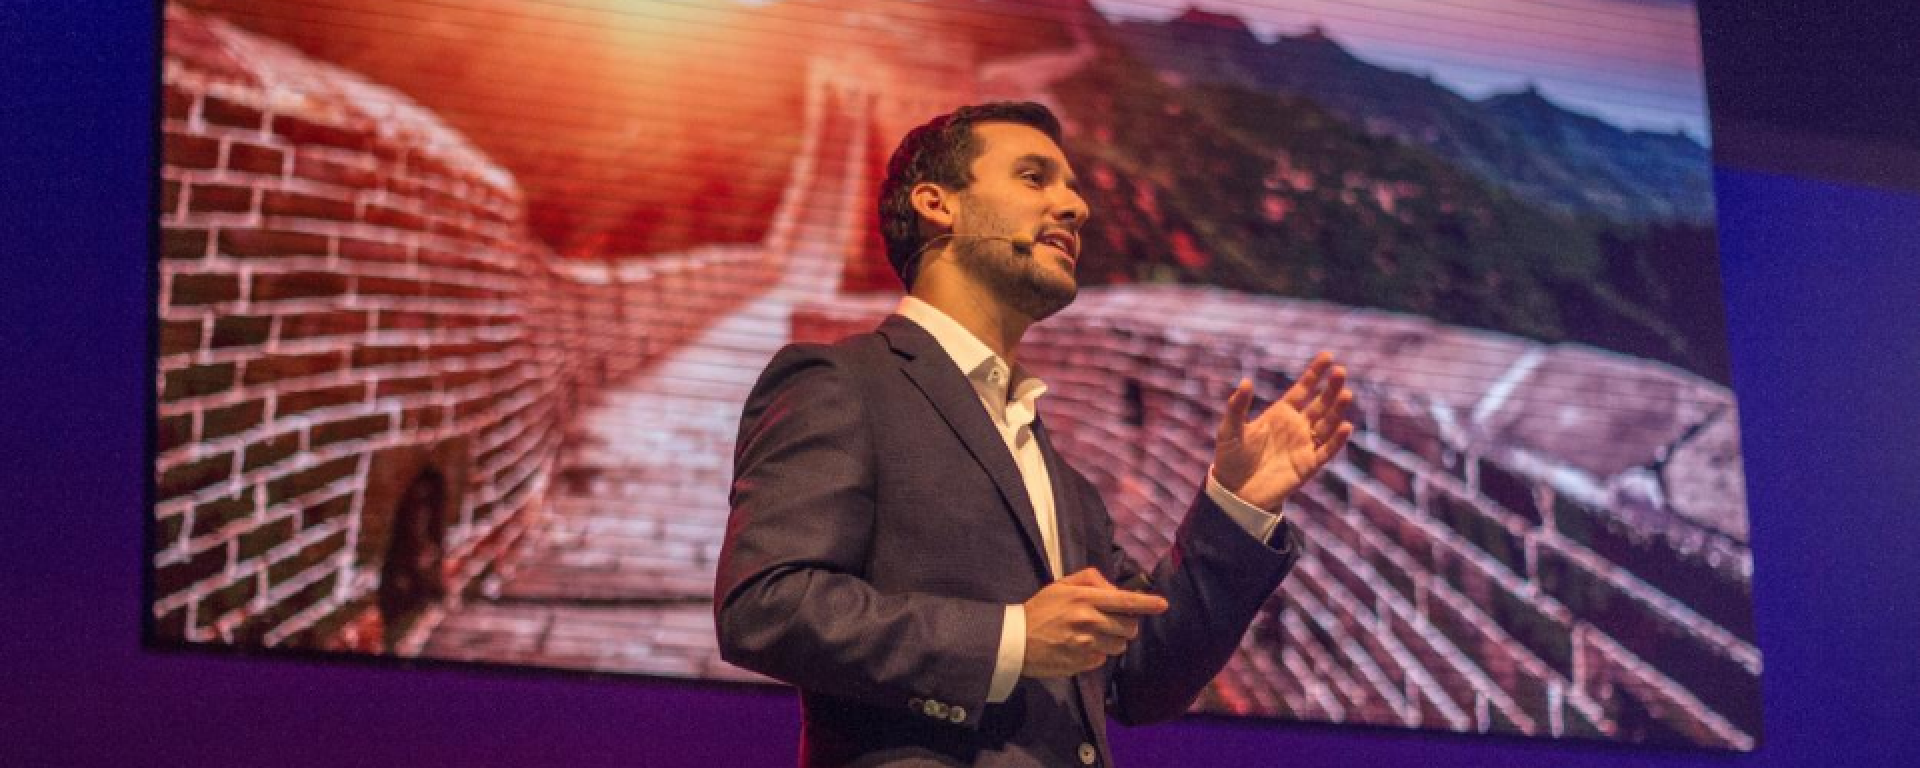 Nicolás Santo durante una charla TEDx con la imagen de la Gran Muralla china detrás.